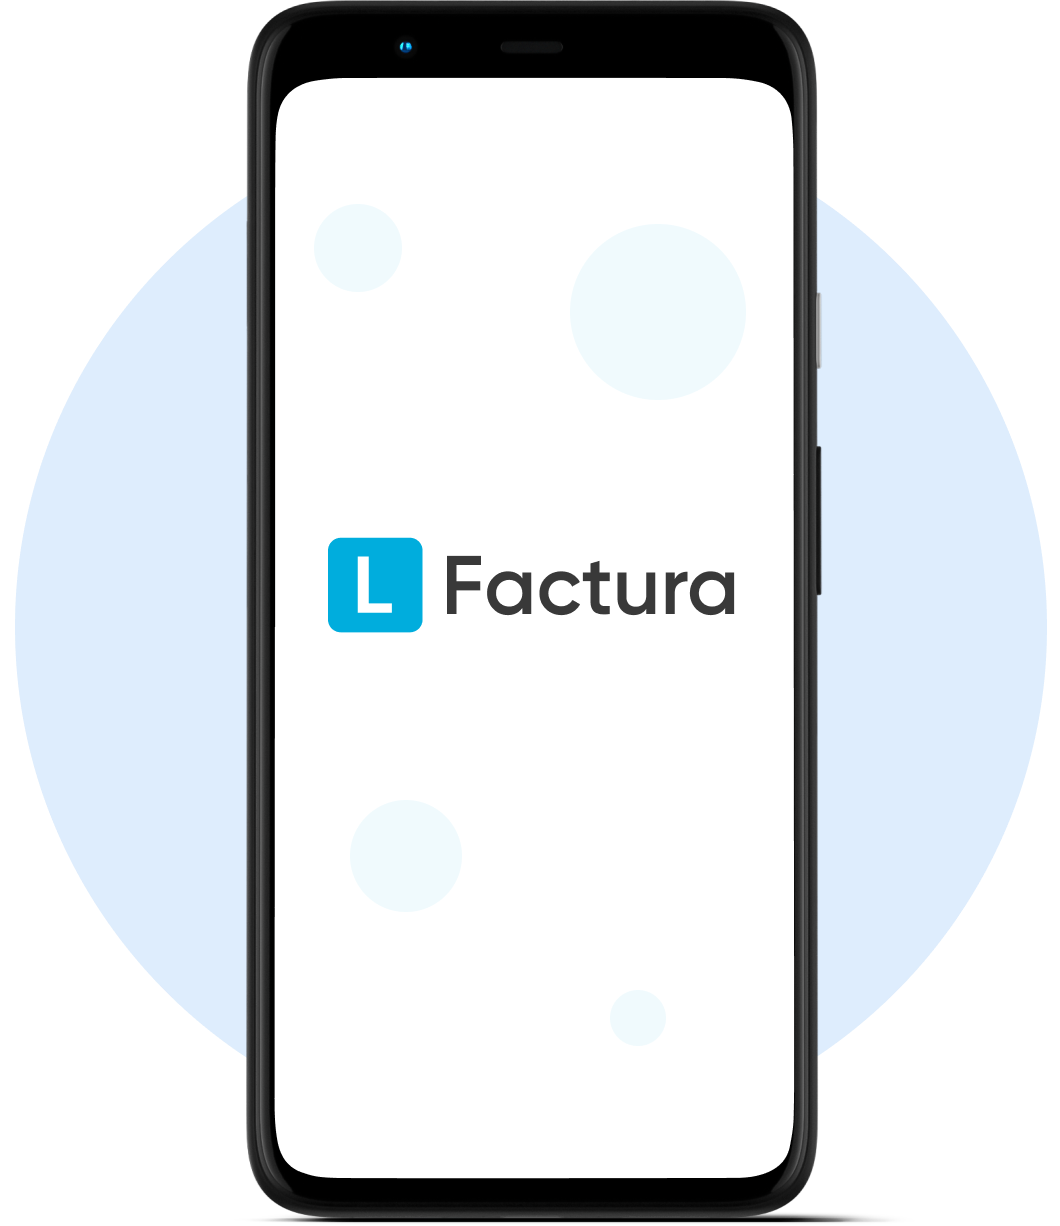 L-factura, мобильное приложения